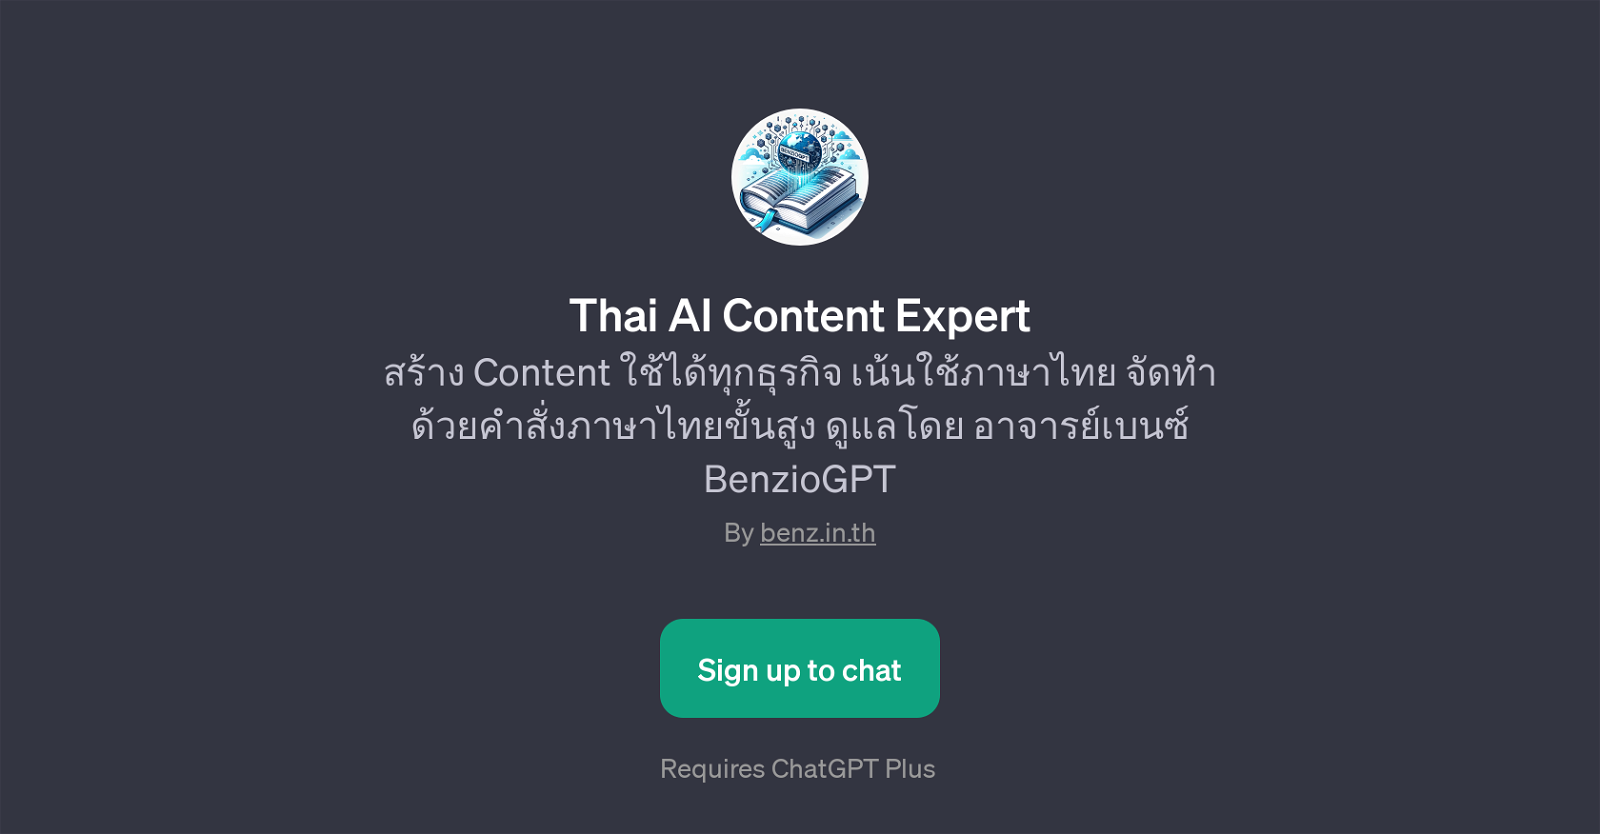 Thai AI Content Expert website